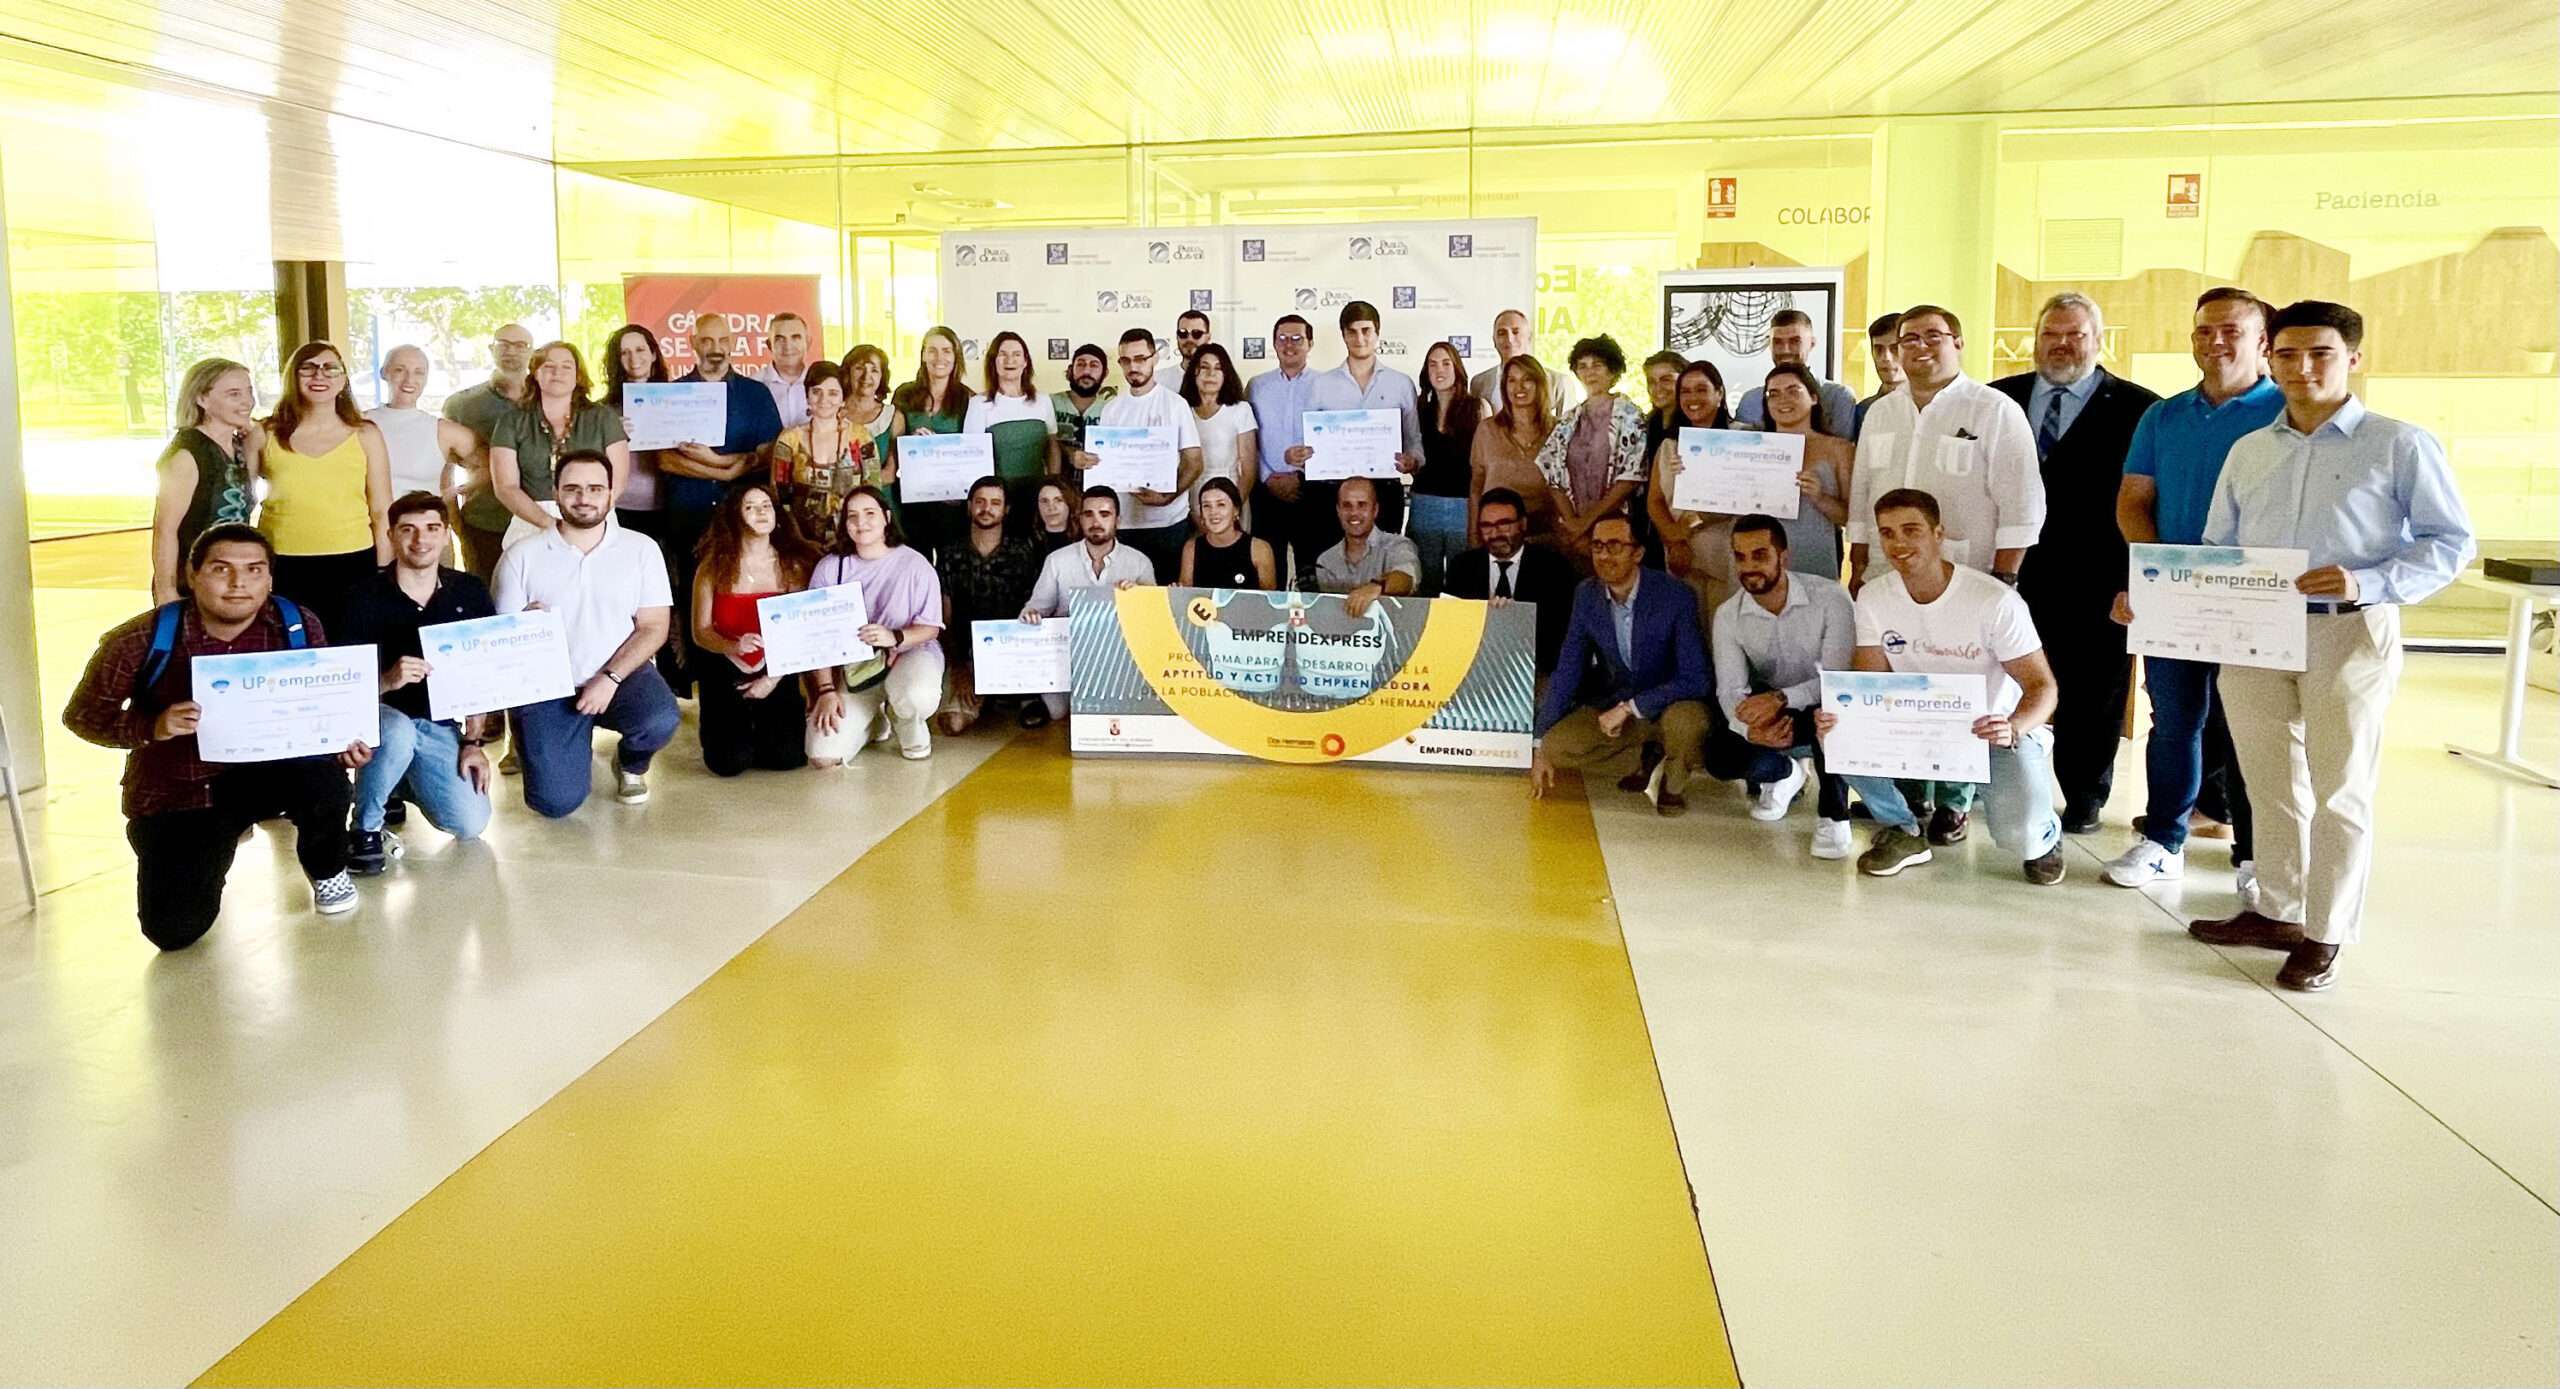 La Universidad Pablo de Olavide premia el talento emprendedor en la XV edición del Concurso UPOemprende